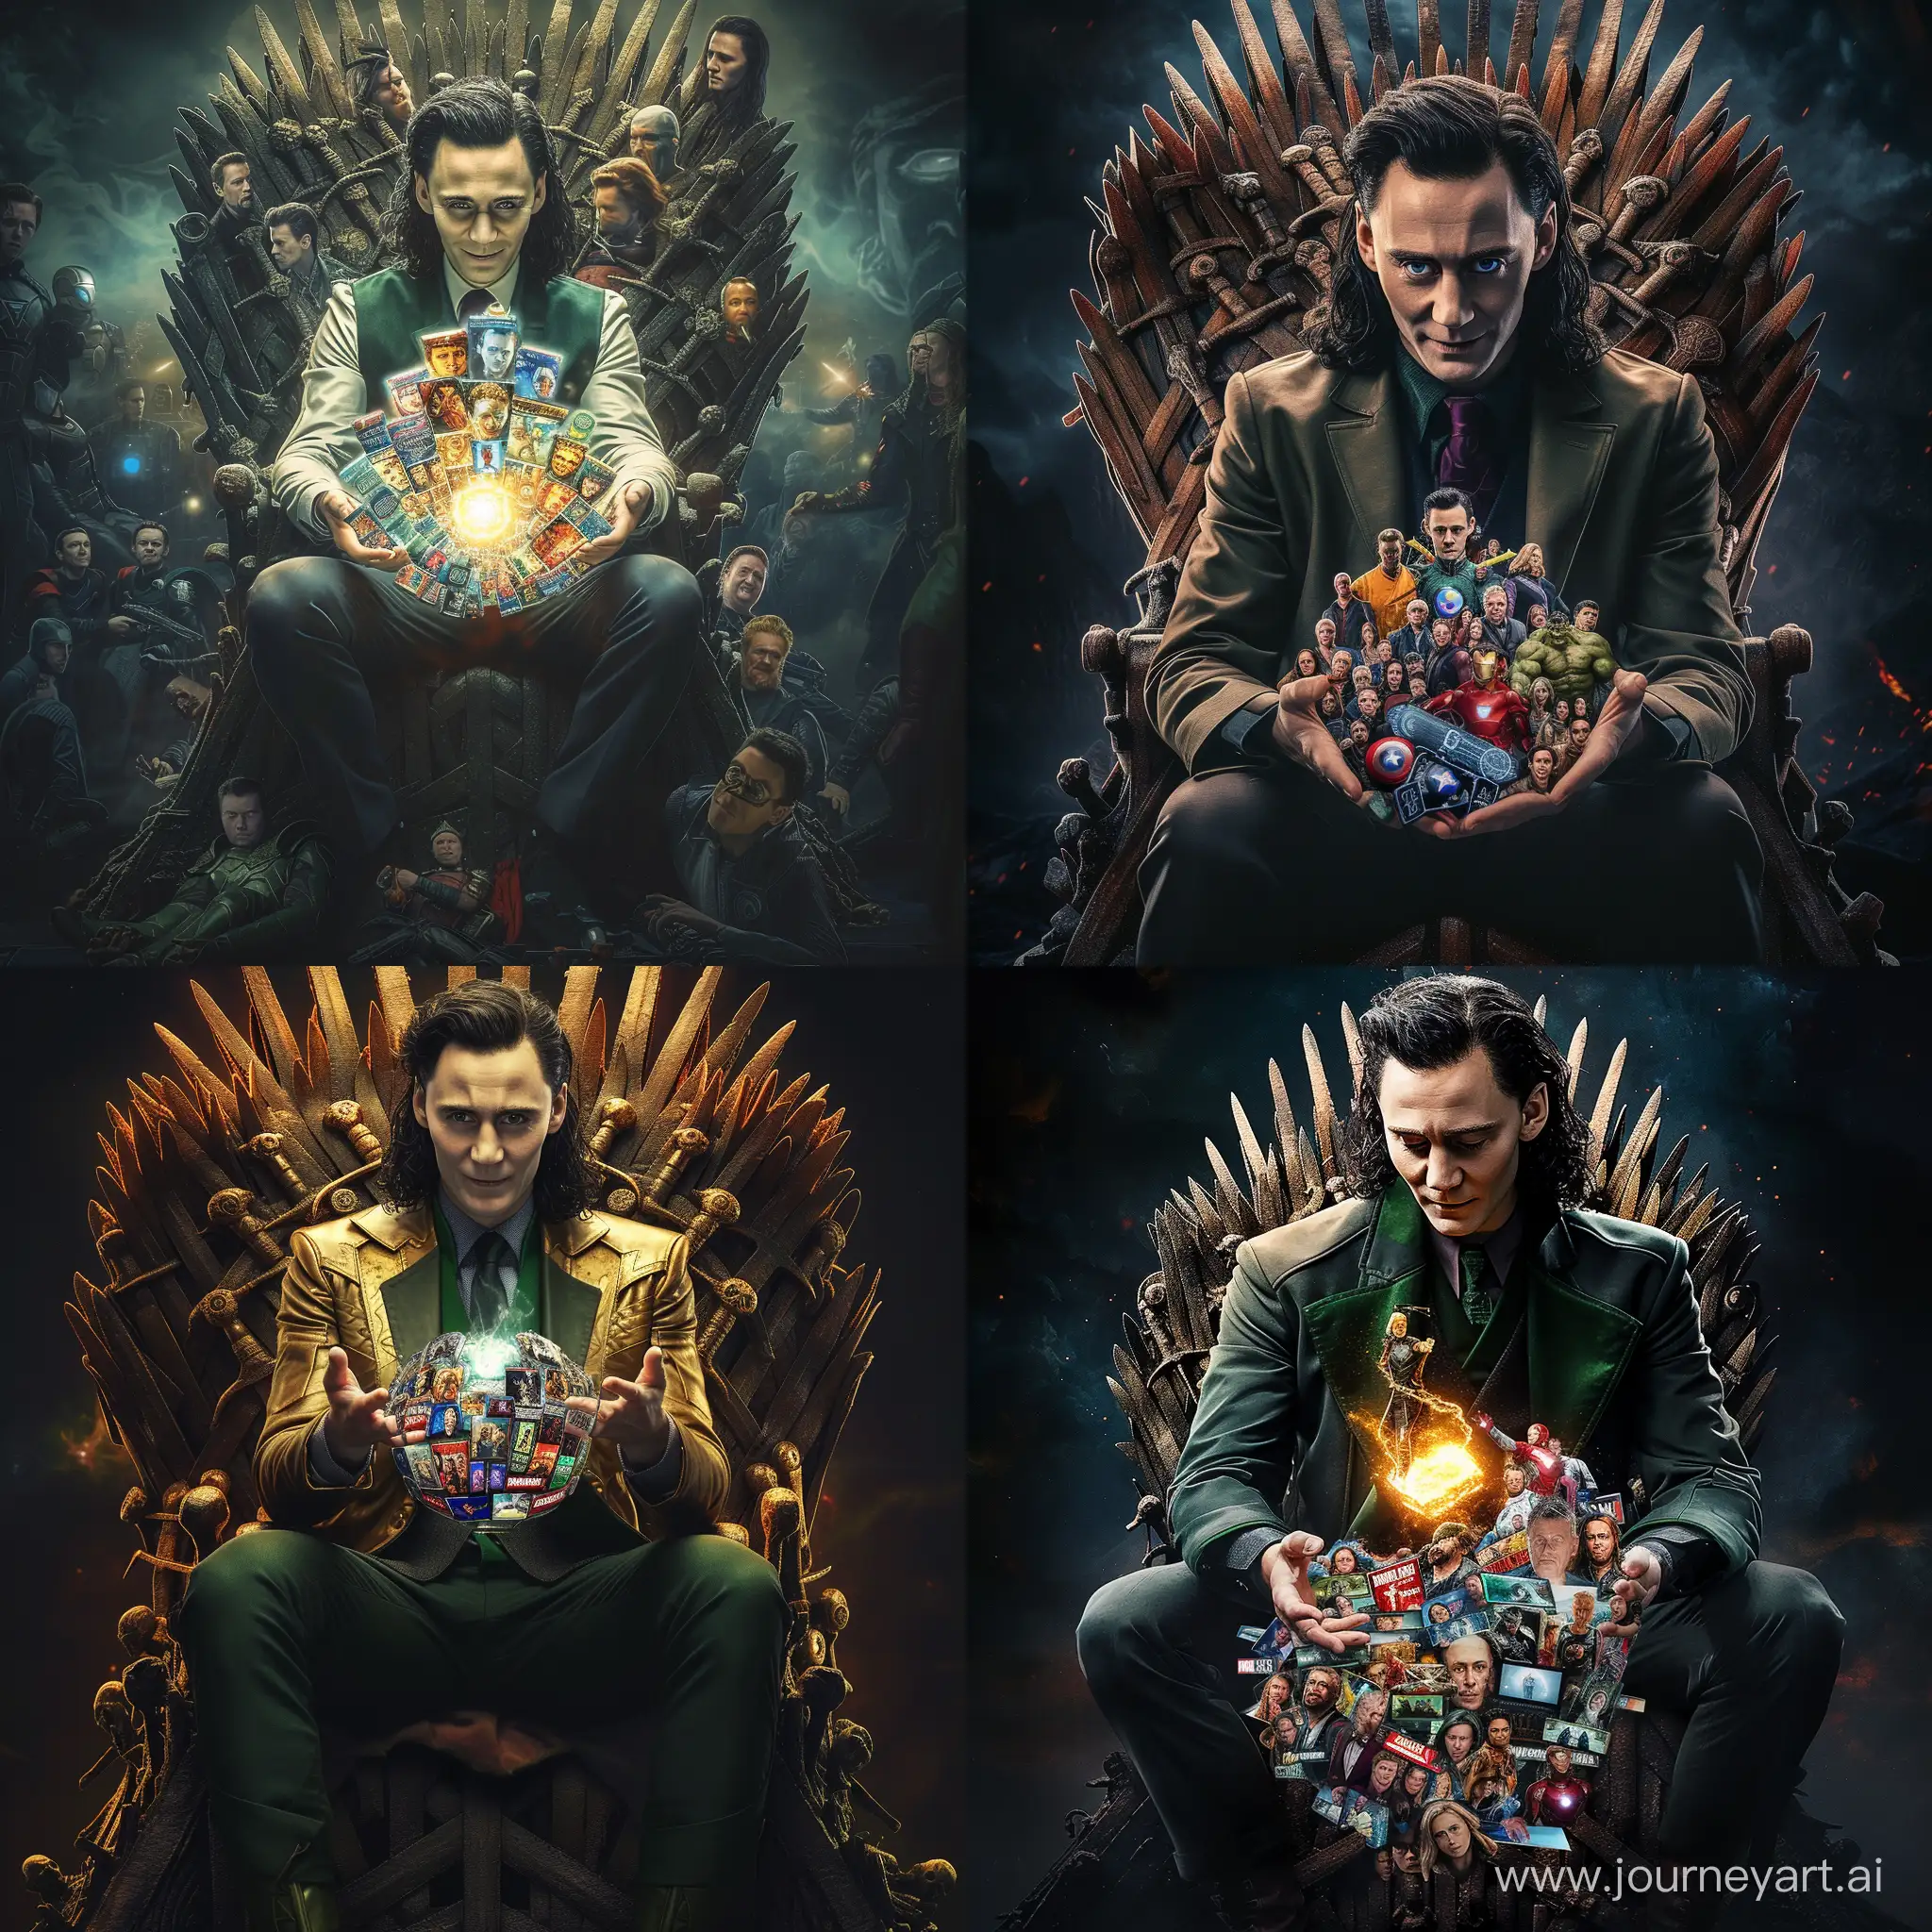 Локи Тома Хиддлстона из финала второго сезона сериала локи, держащий в руках киновселенную marvel,  сидя на троне, состоящем из фильмов кино Вселенной marvel, фотореалистичный стиль